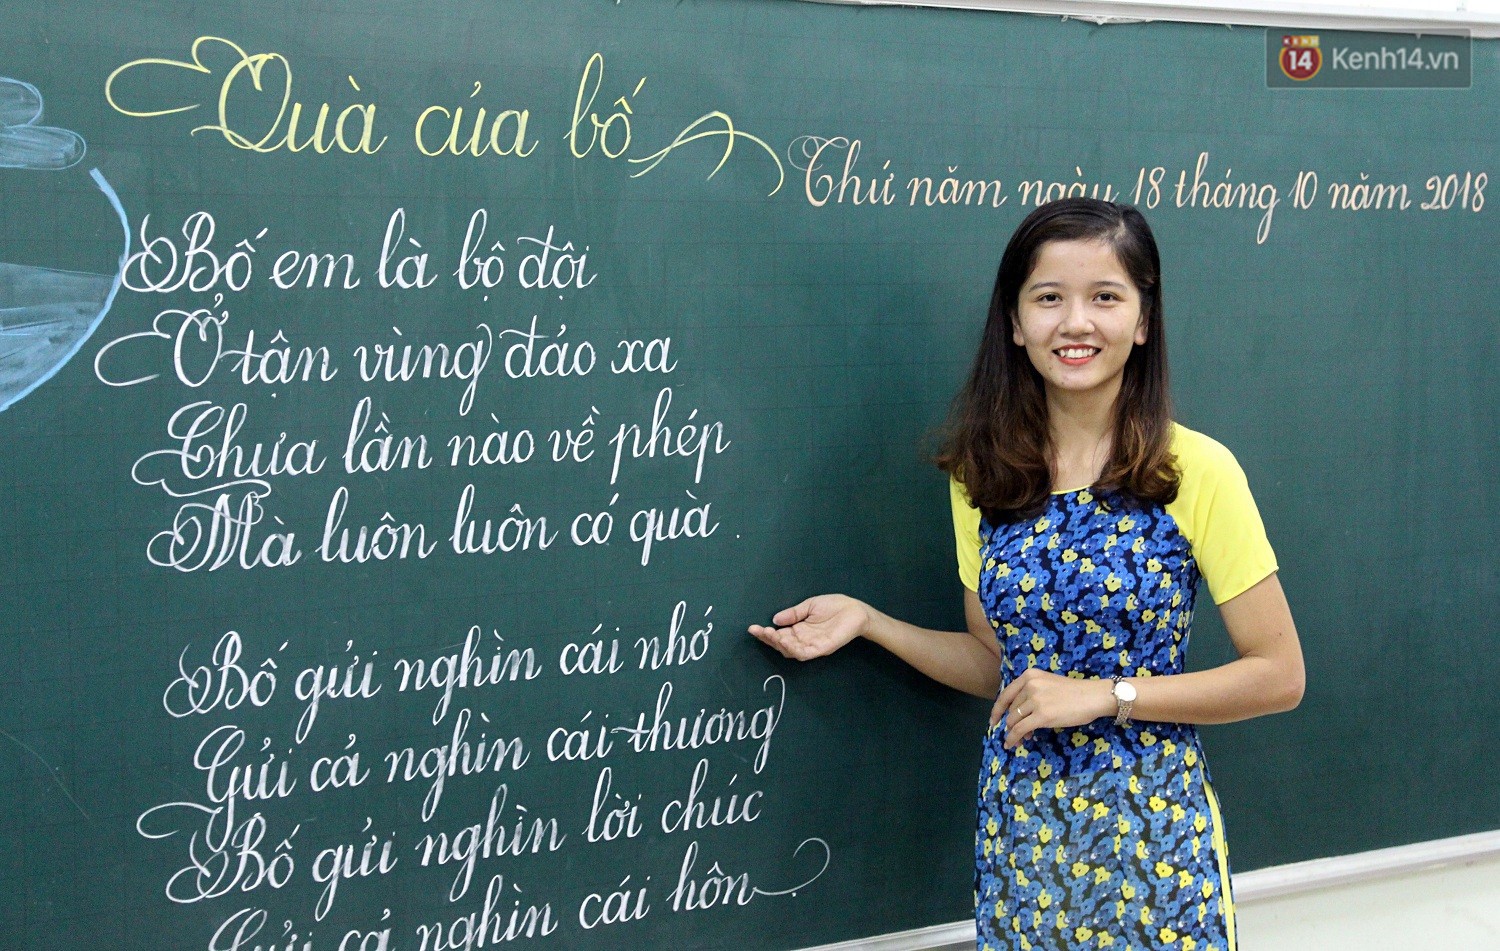 Cô giáo Quảng Trị: Cô giáo Quảng Trị được biết đến là một trong những nữ giáo viên tiêu biểu của Việt Nam. Bằng tình cảm và sự nhiệt tình, Cô giáo đã truyền đạt kiến thức cho nhiều thế hệ học sinh. Xem hình ảnh về Cô giáo Quảng Trị để cảm nhận sự hi sinh và tình yêu thương mà cô đã trao cho học trò của mình.